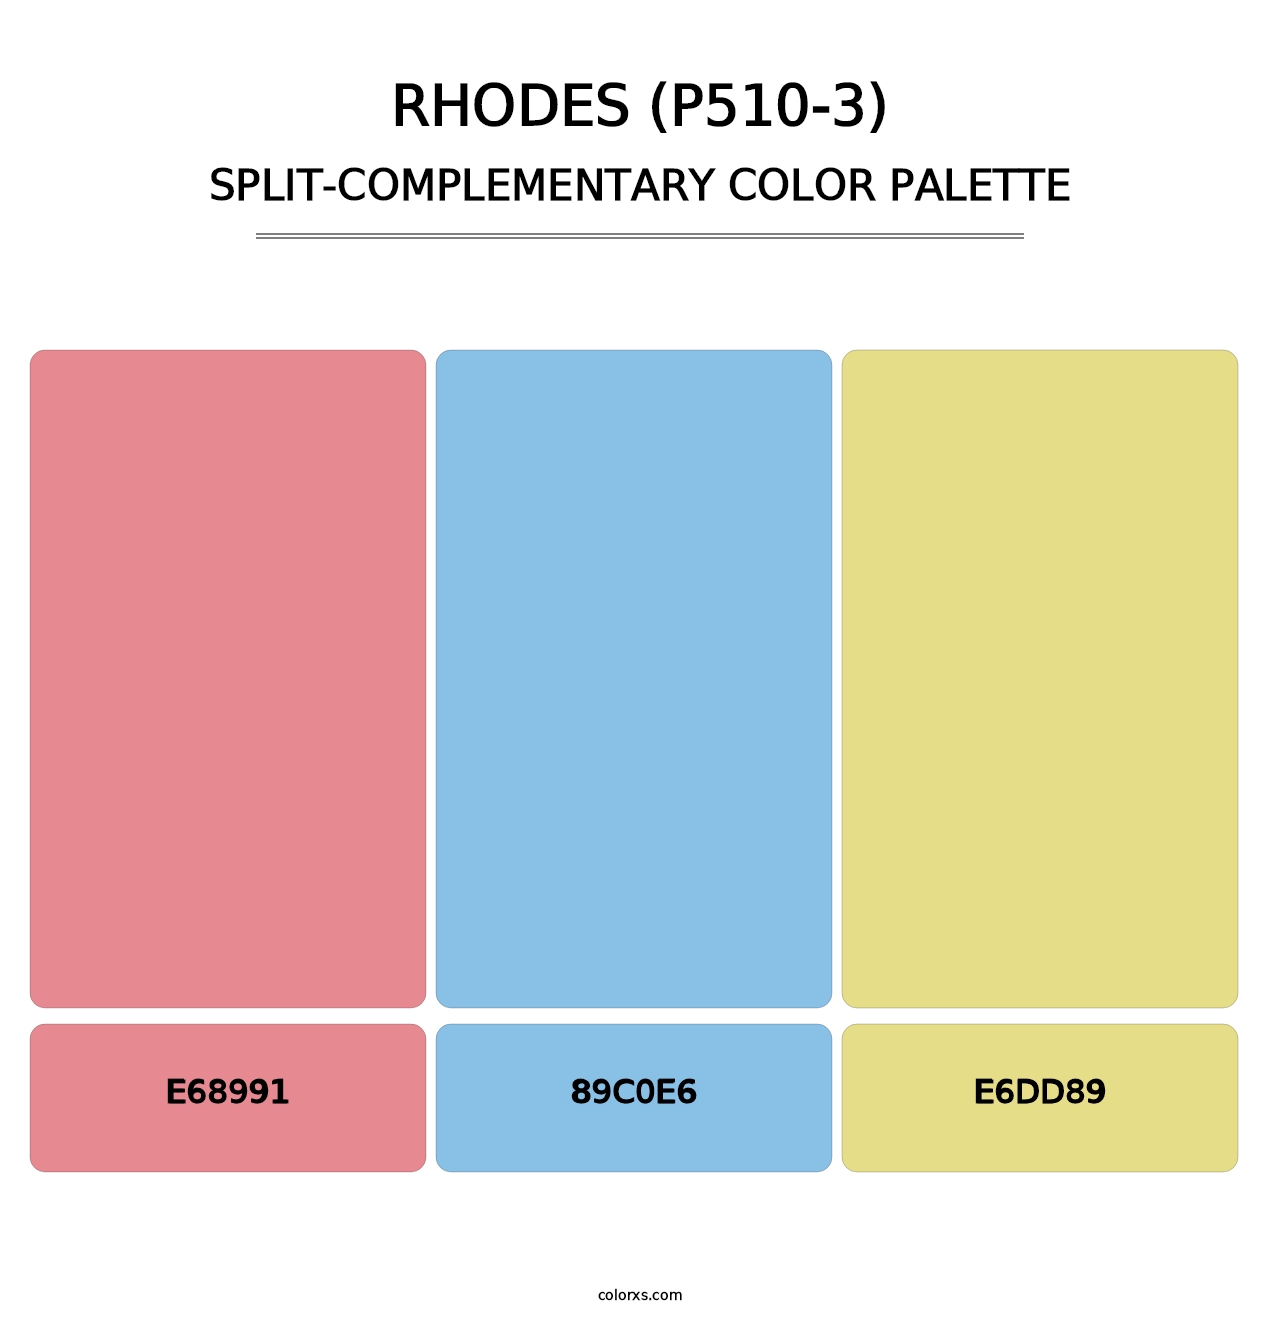 Rhodes (P510-3) - Split-Complementary Color Palette